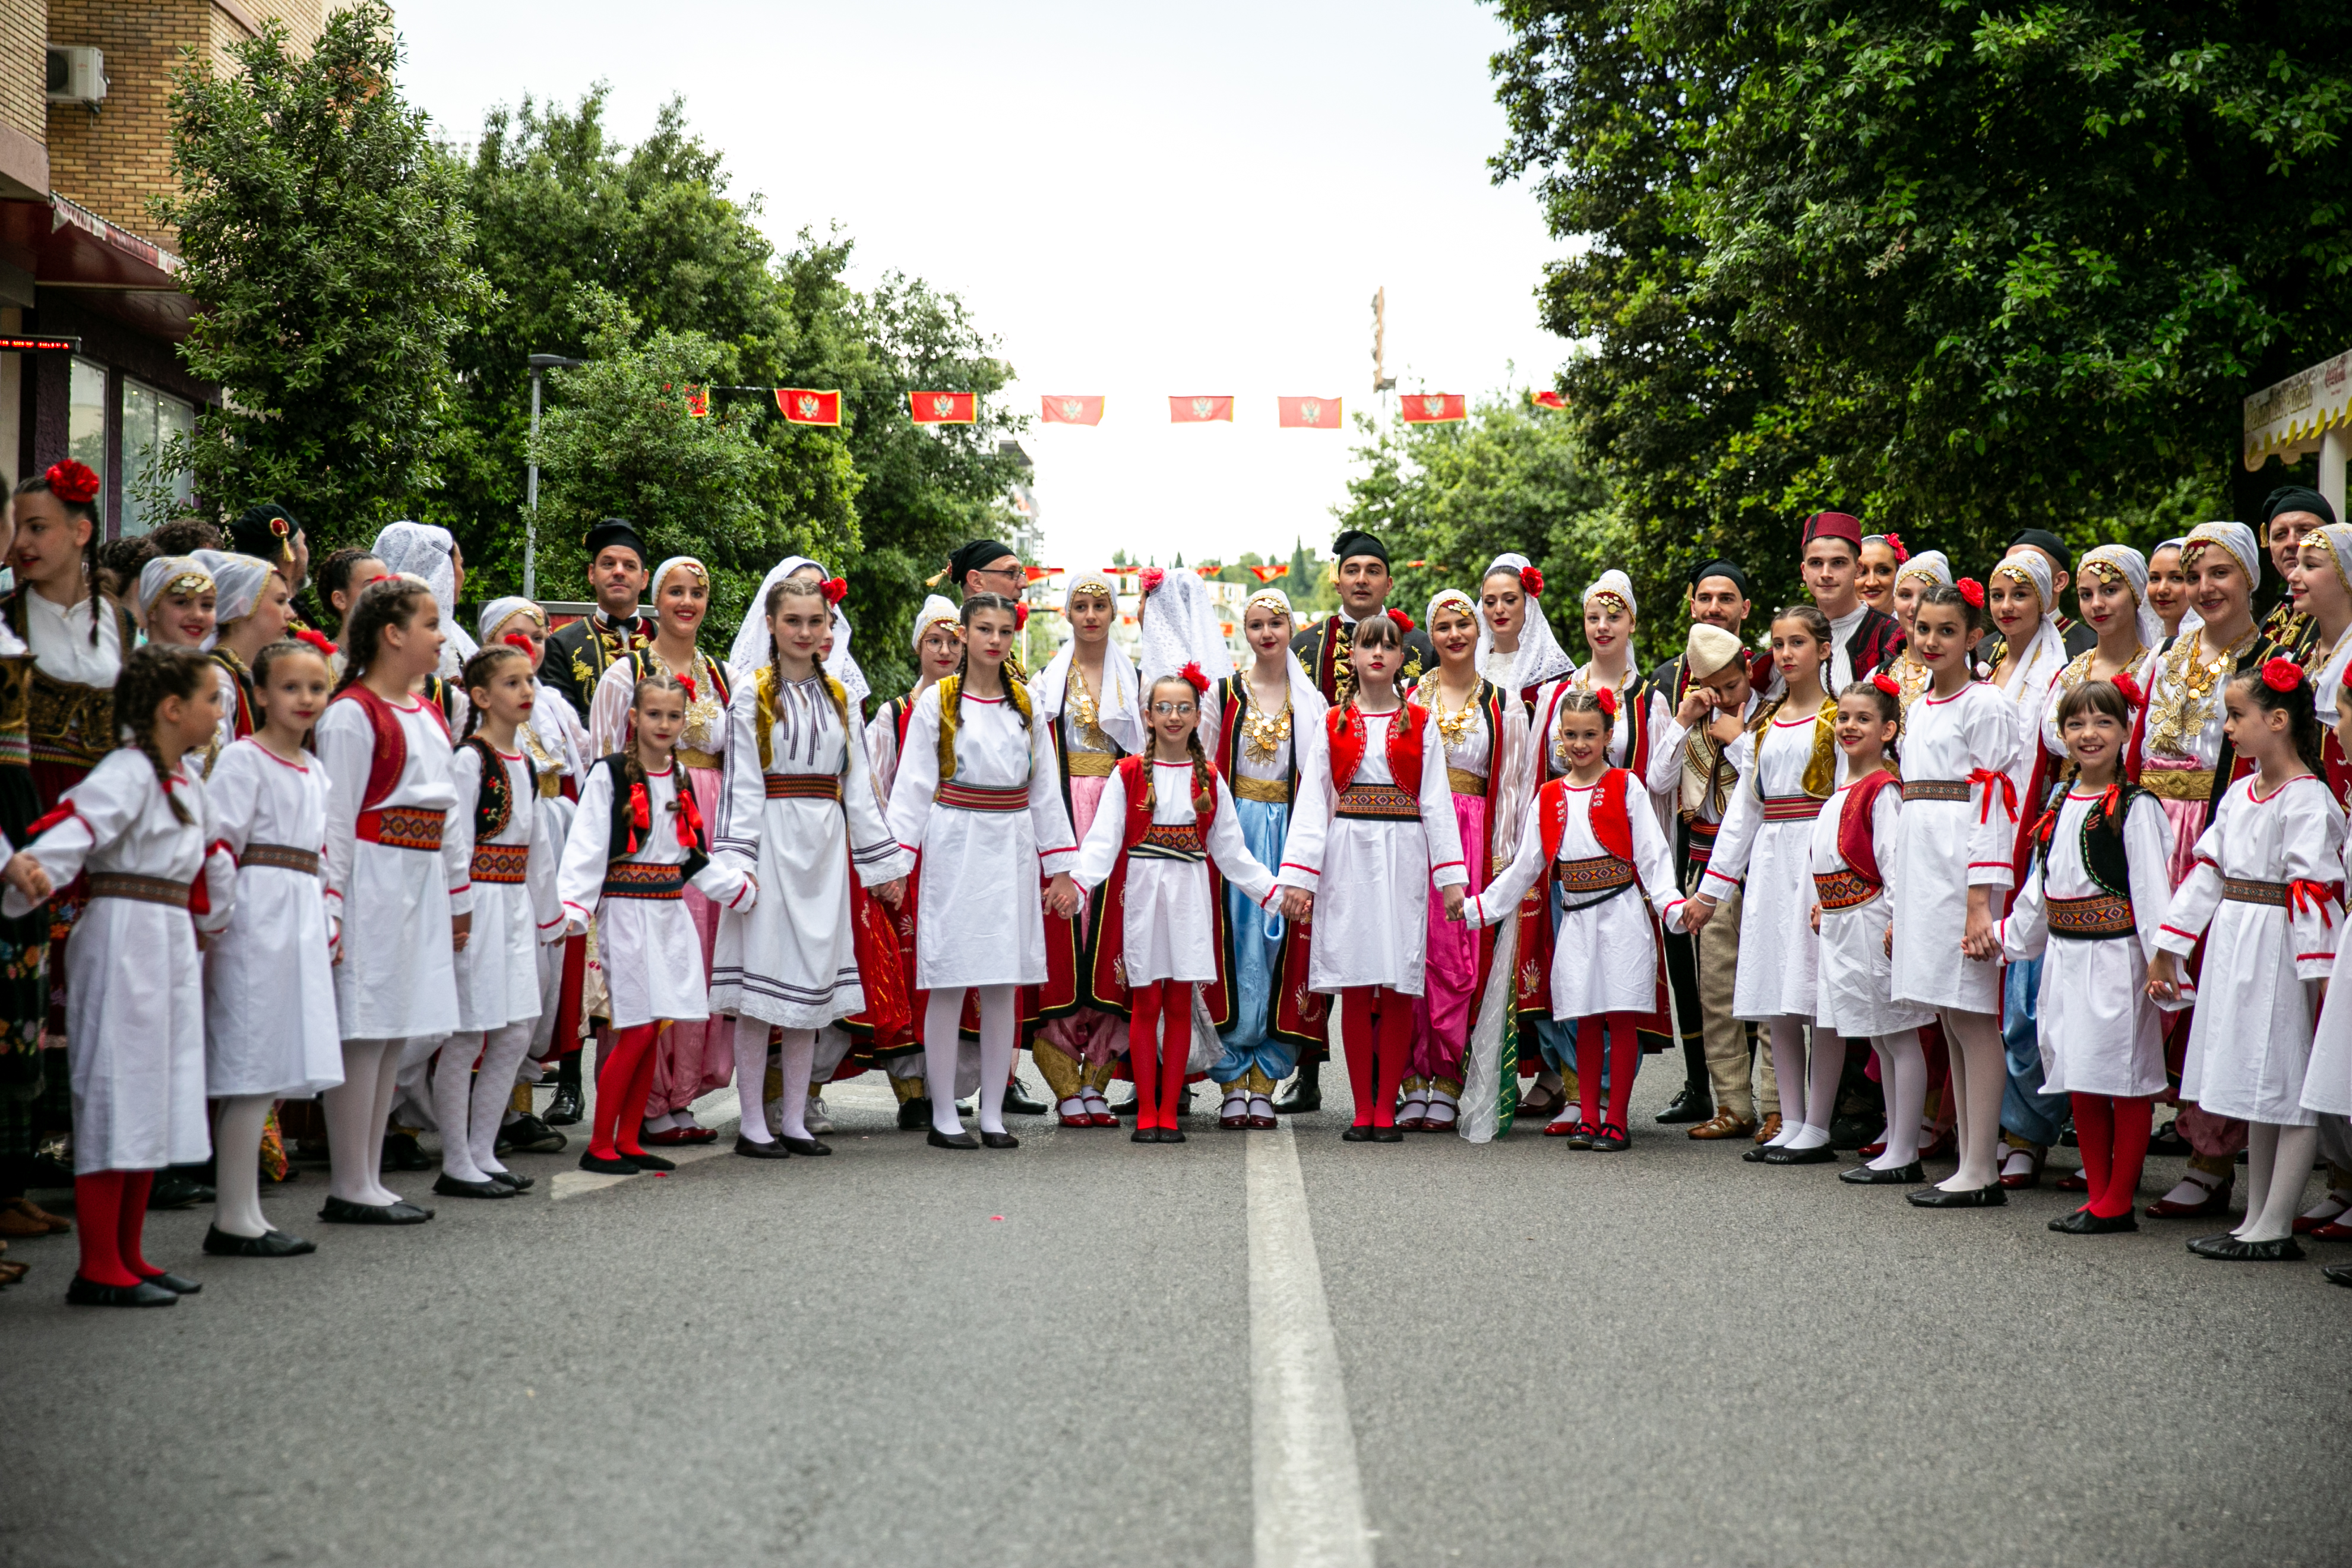 Folklorni spektakl na Trgu nezavisnosti: 11 ansambala sa teritorije Podgorice prikazalo svu ljepotu narodne igre